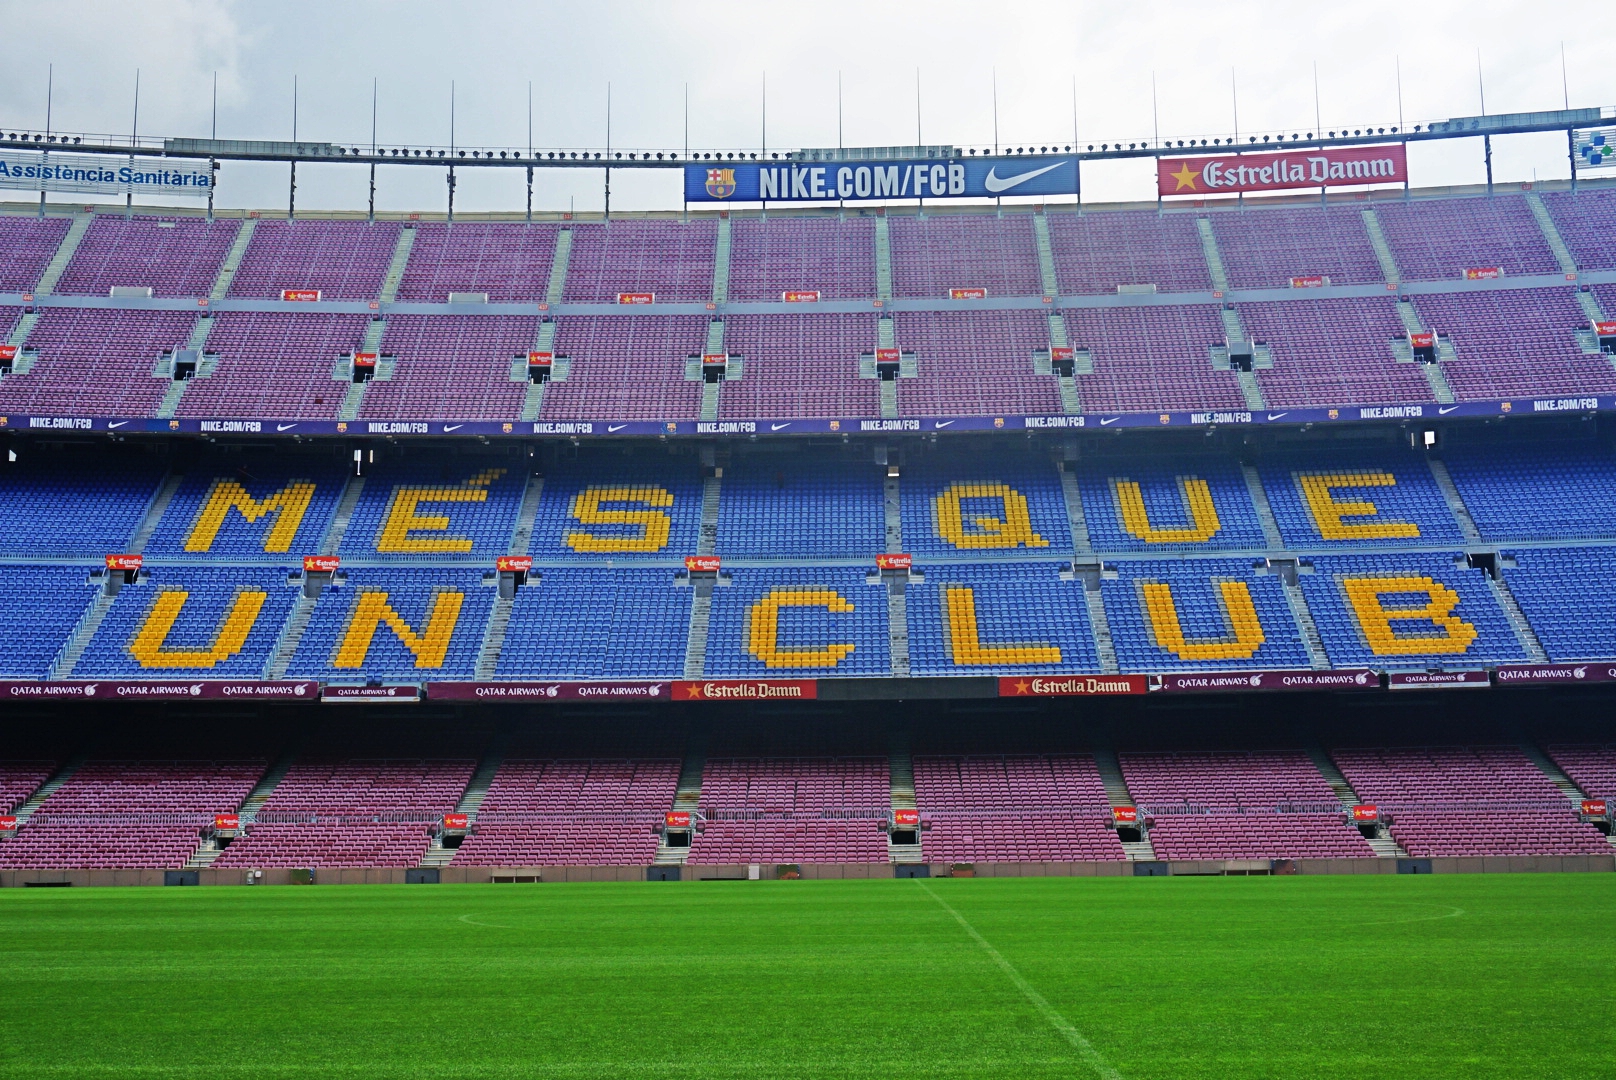 【携程攻略】巴塞罗那诺坎普球场景点,诺坎普是欧洲最大的体育场,最多